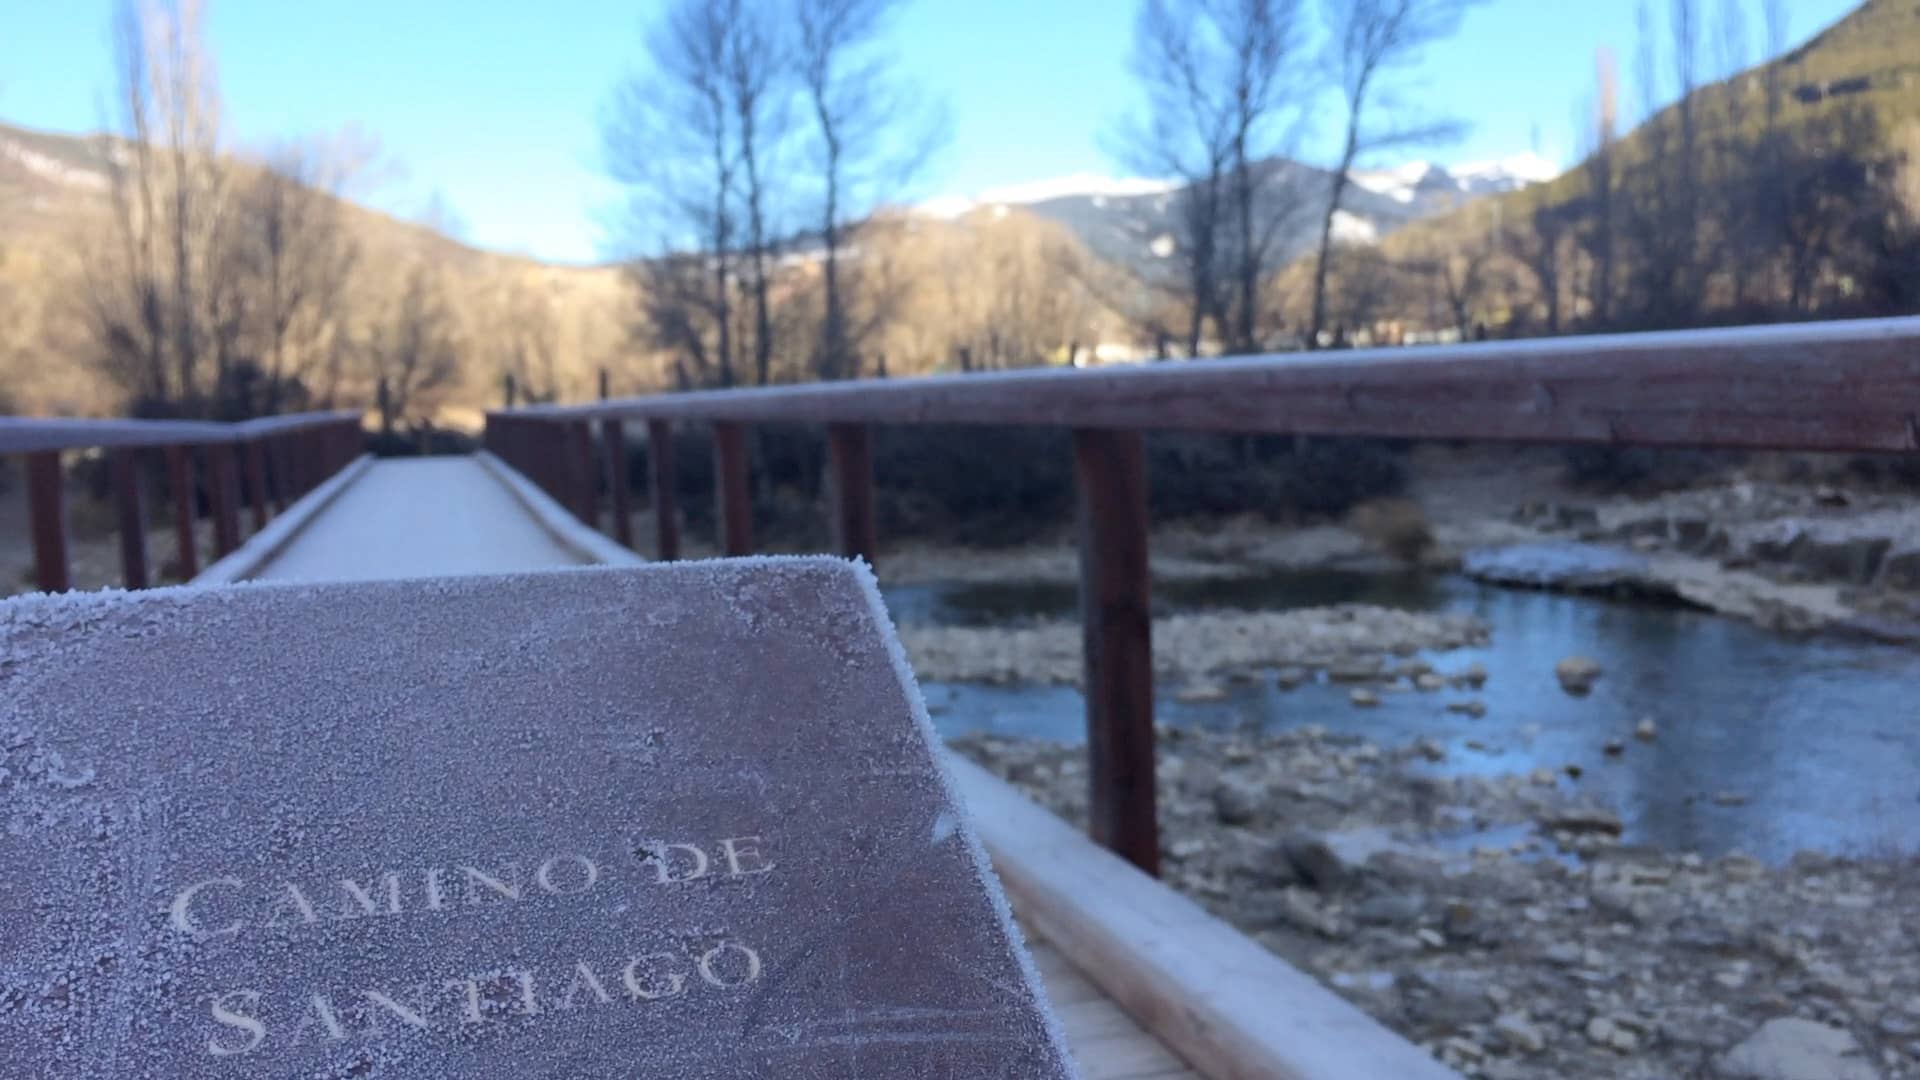 Gelo sobre ponte caminho de santiago